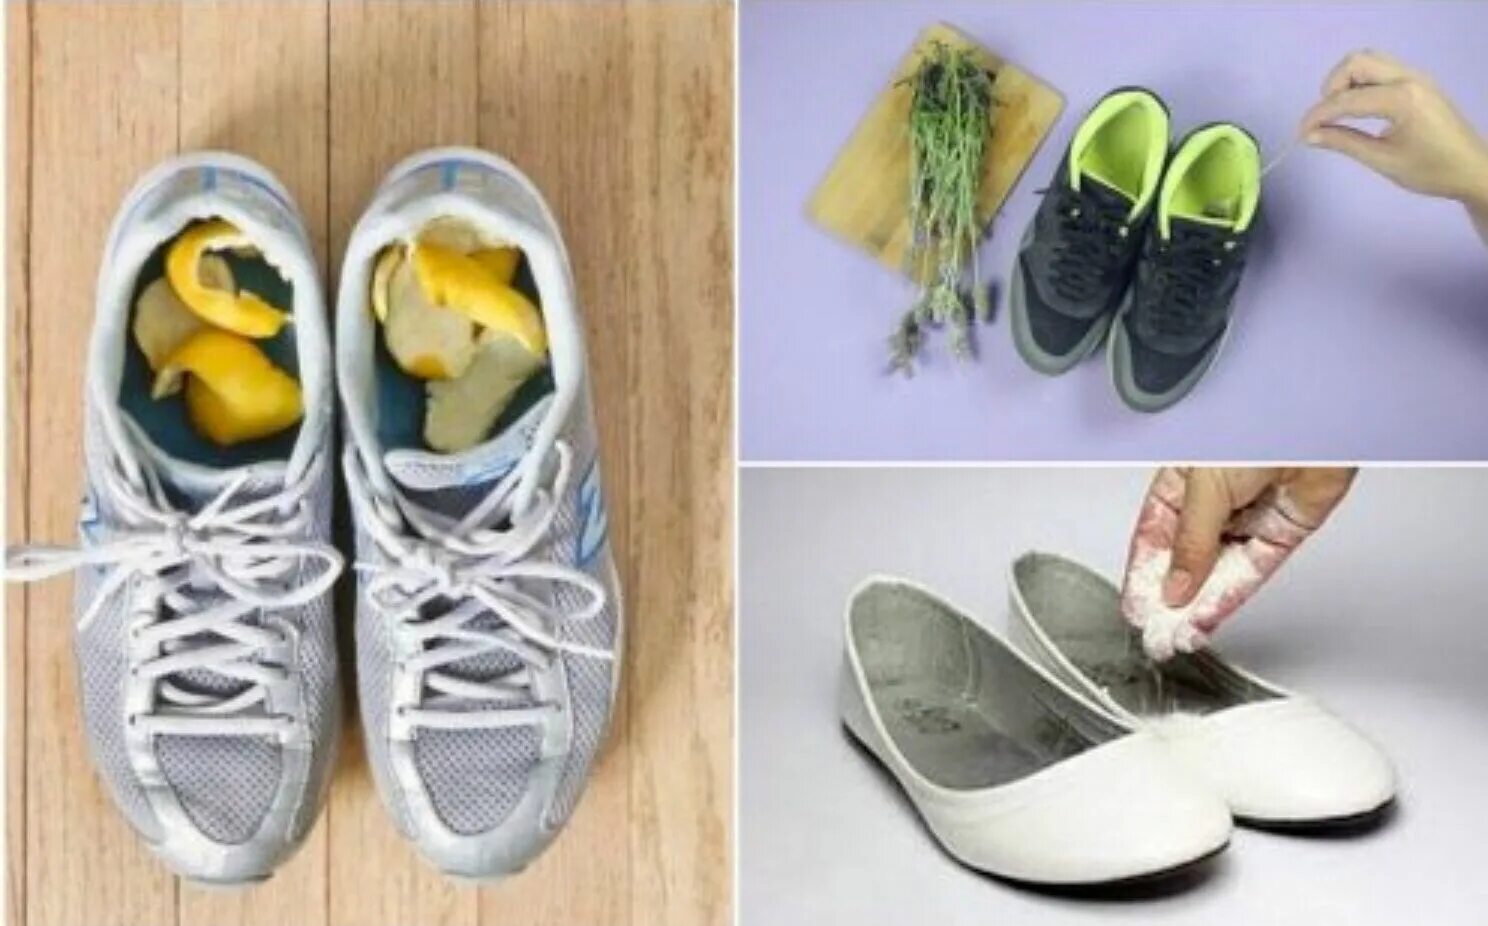 Убрать запах обуви в домашних условиях быстро. Штучки от запаха в обуви. Вонючая обувь. Лимон в обувь. Штучка для убирания запаха из обуви.